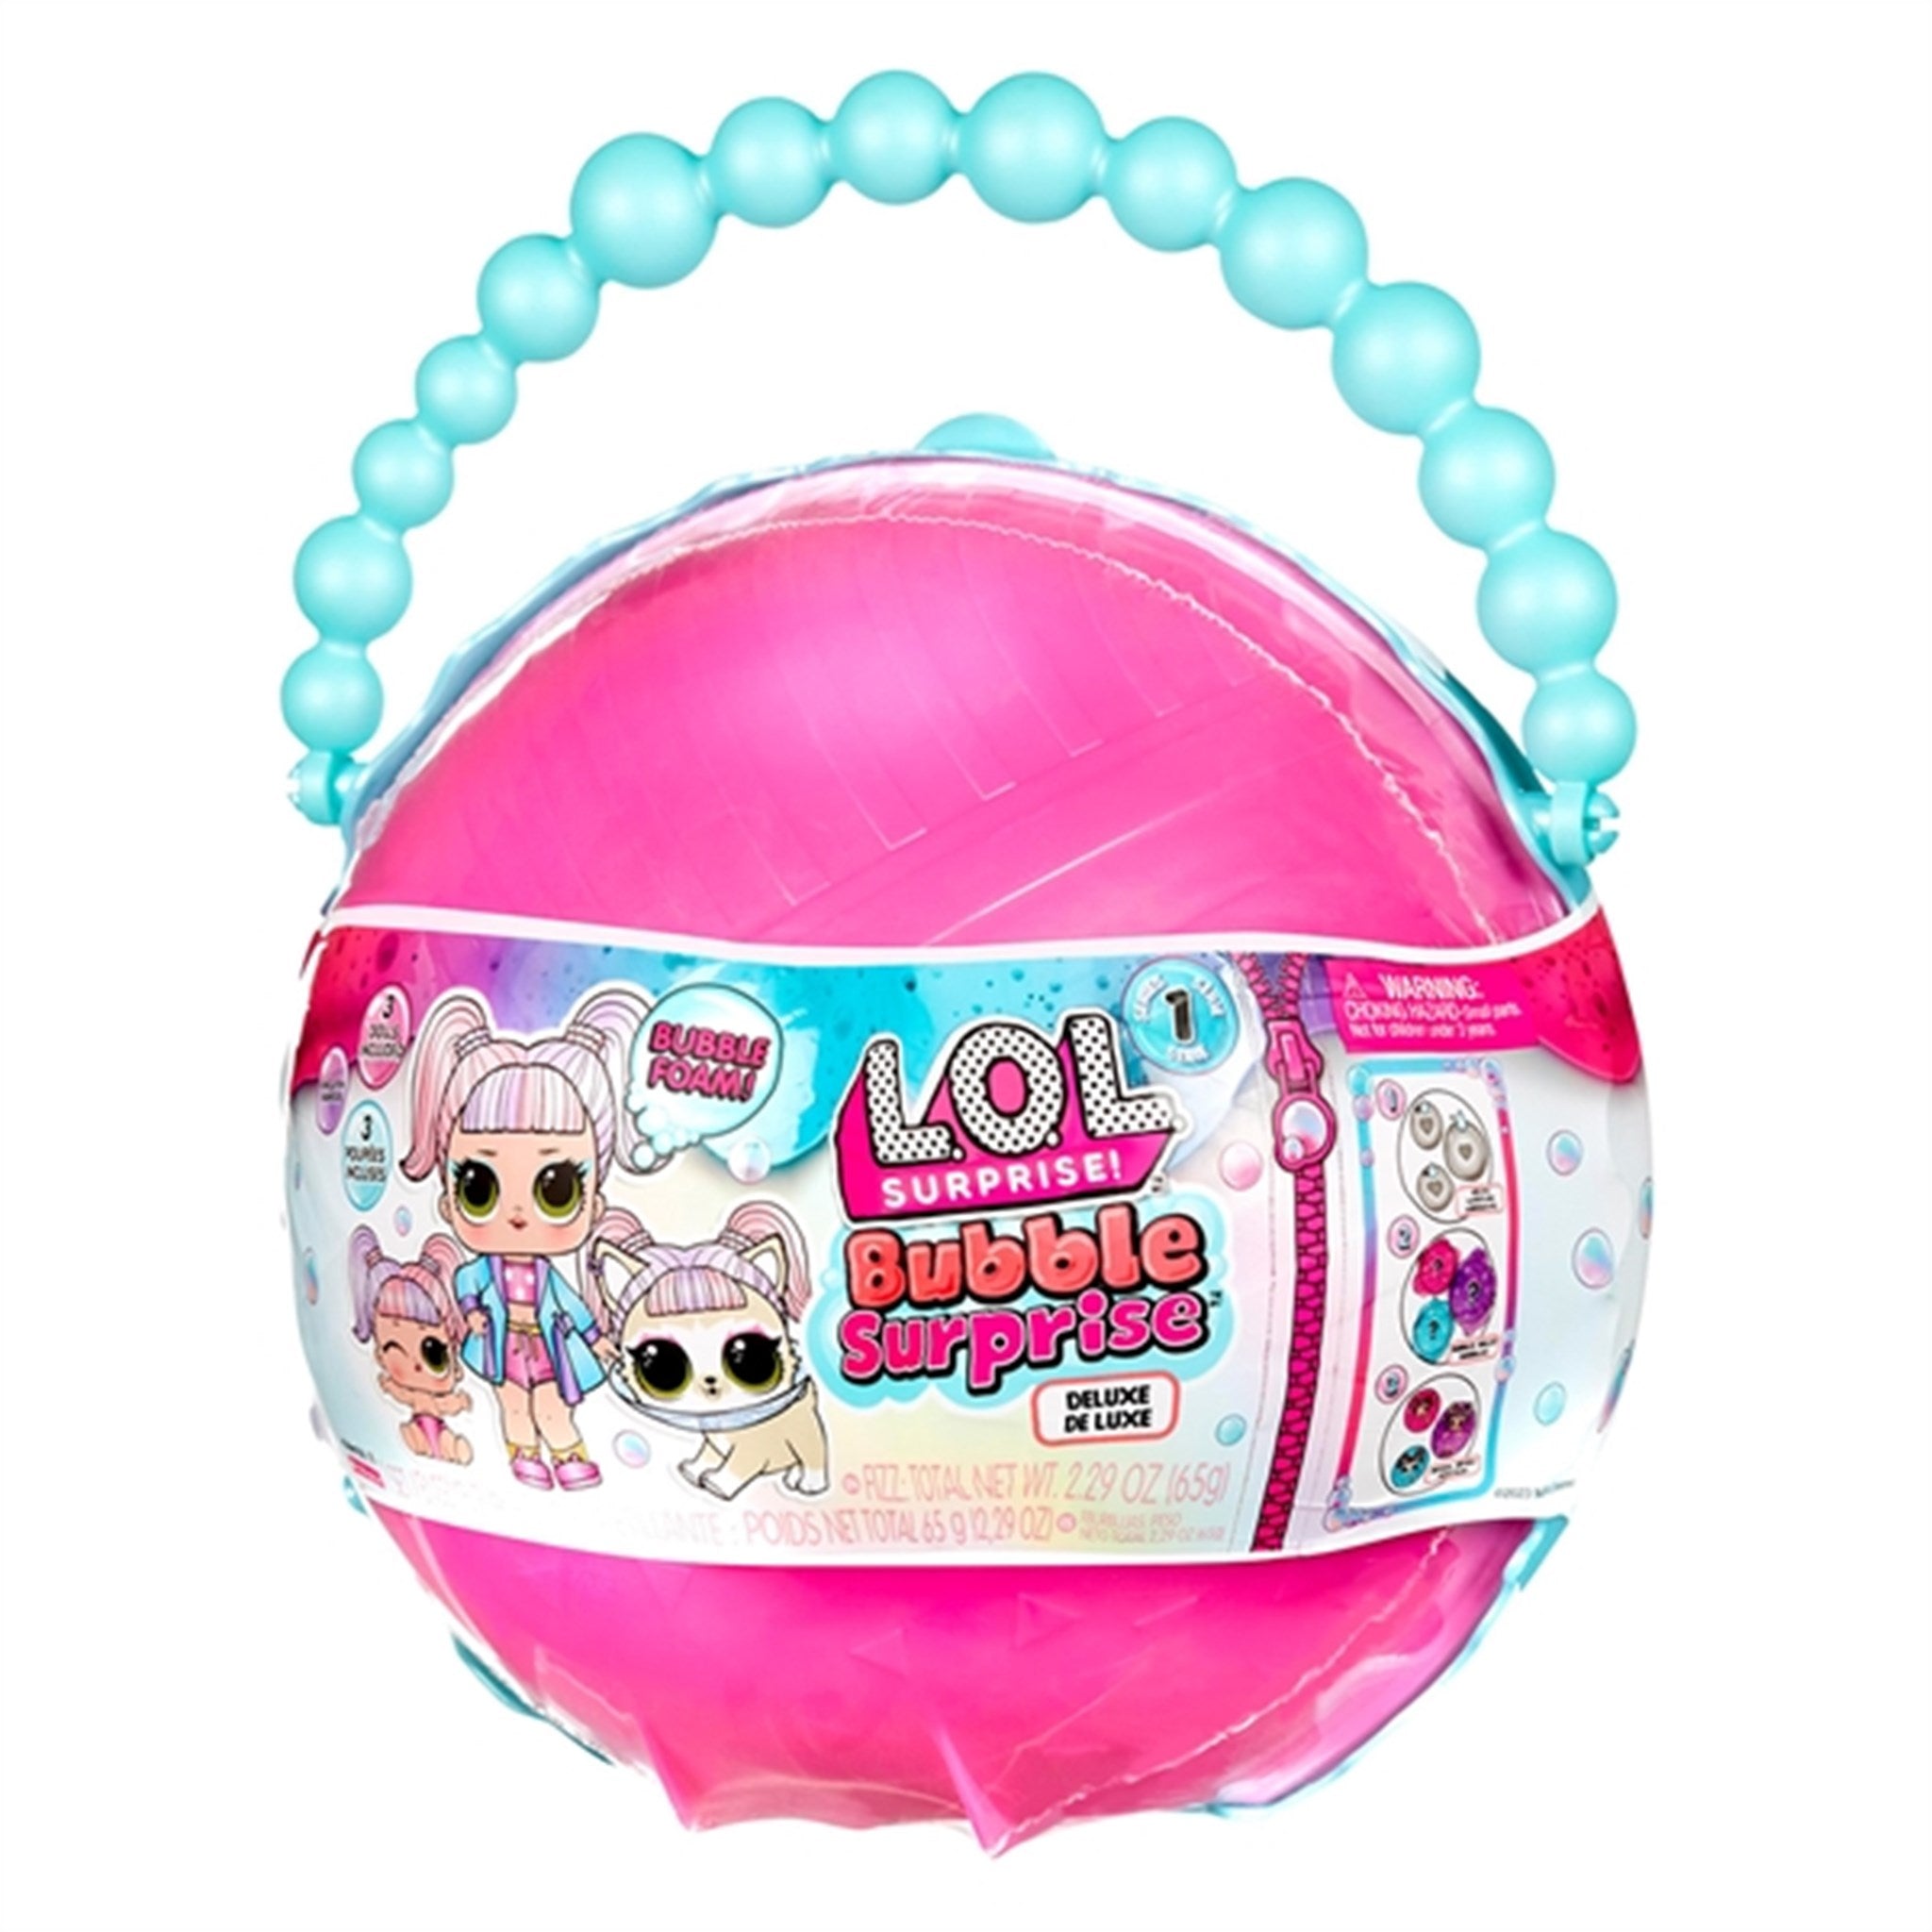 L.O.L. Surprise! Bubble Surprise Pearl Pink